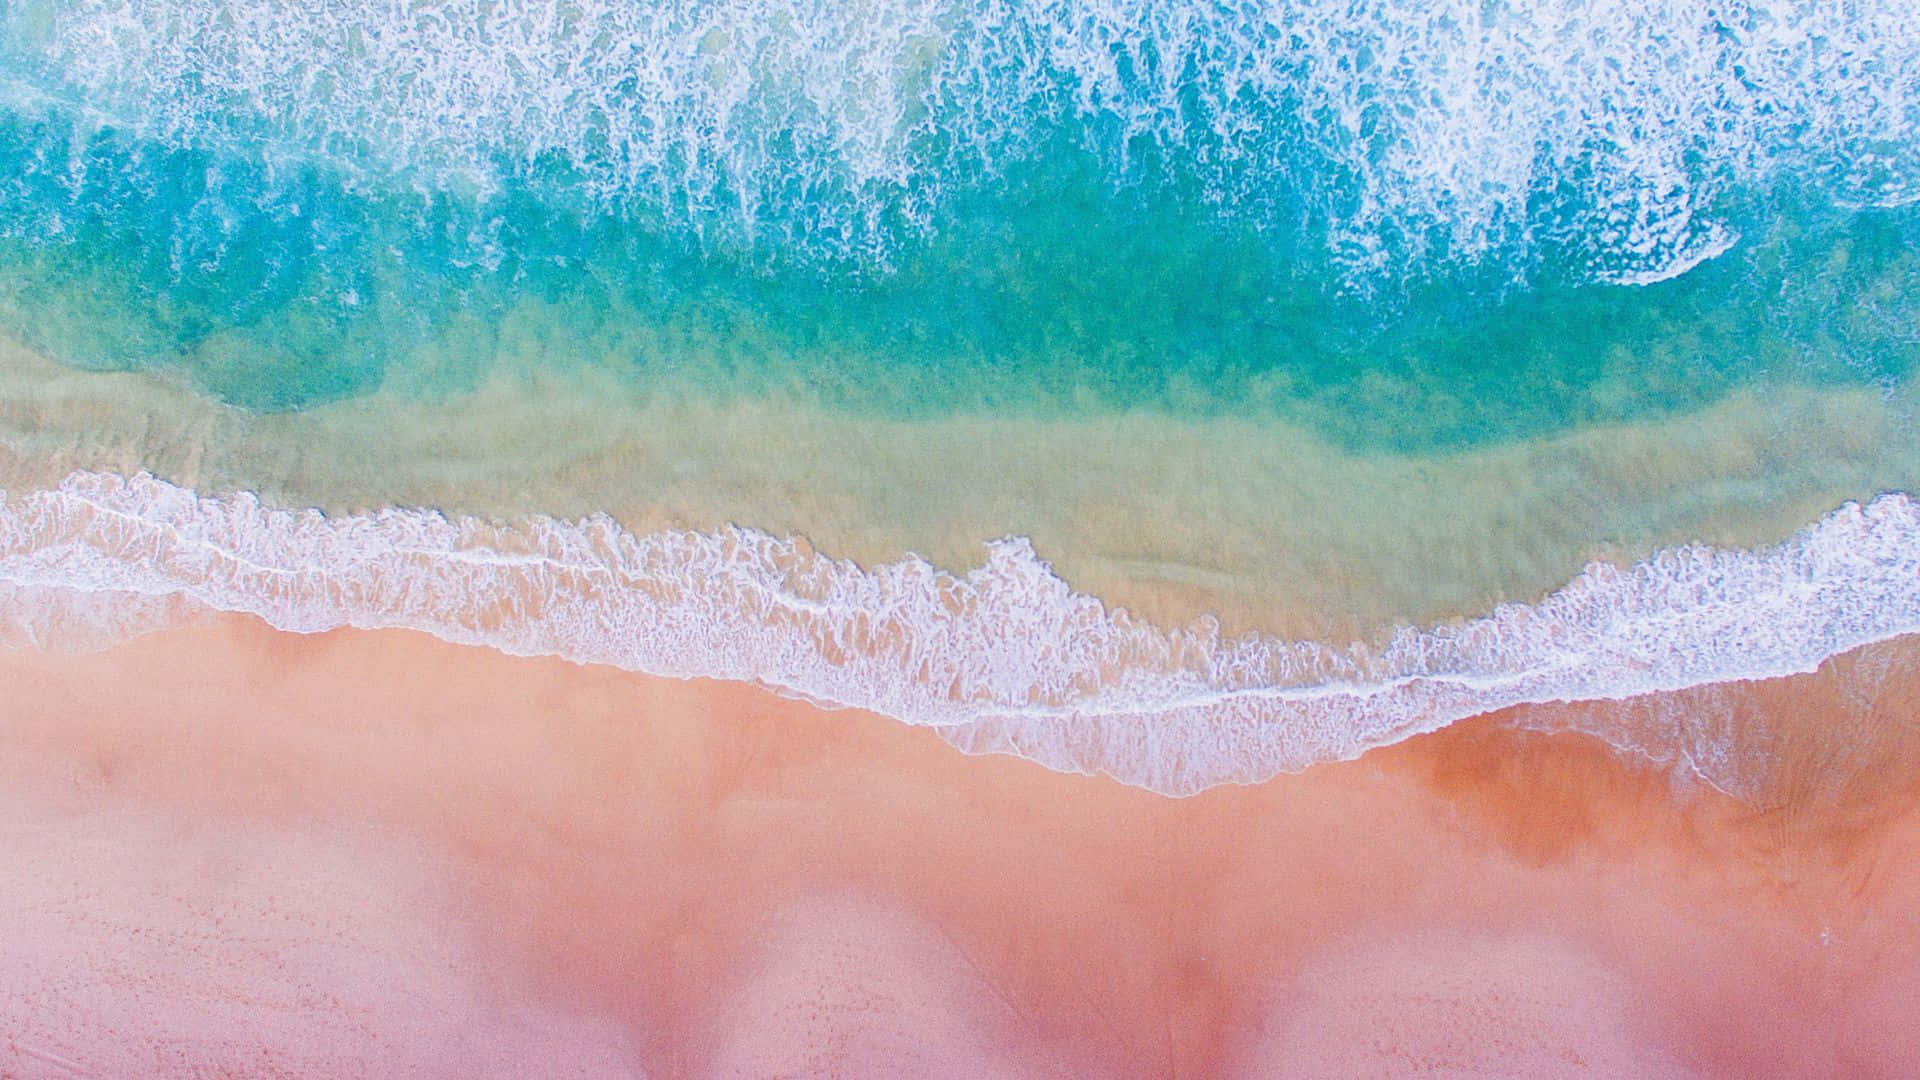 Unavista Impresionante De La Playa Rosa, Donde Las Aguas Turquesas Se Encuentran Con Arenas Rosadas. Fondo de pantalla